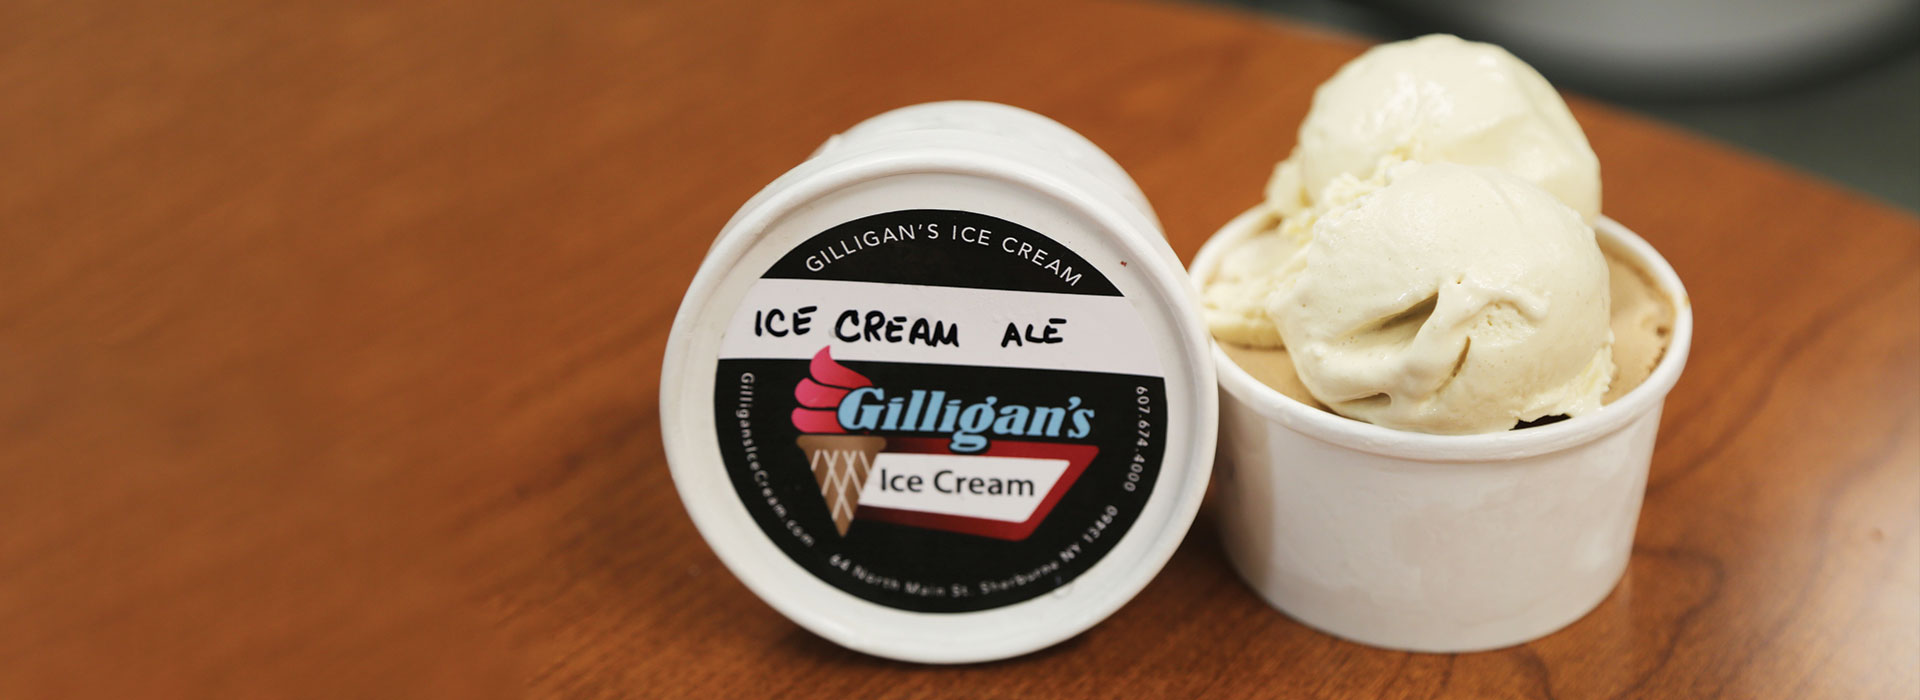 Gilligan's Ice Cream Ale